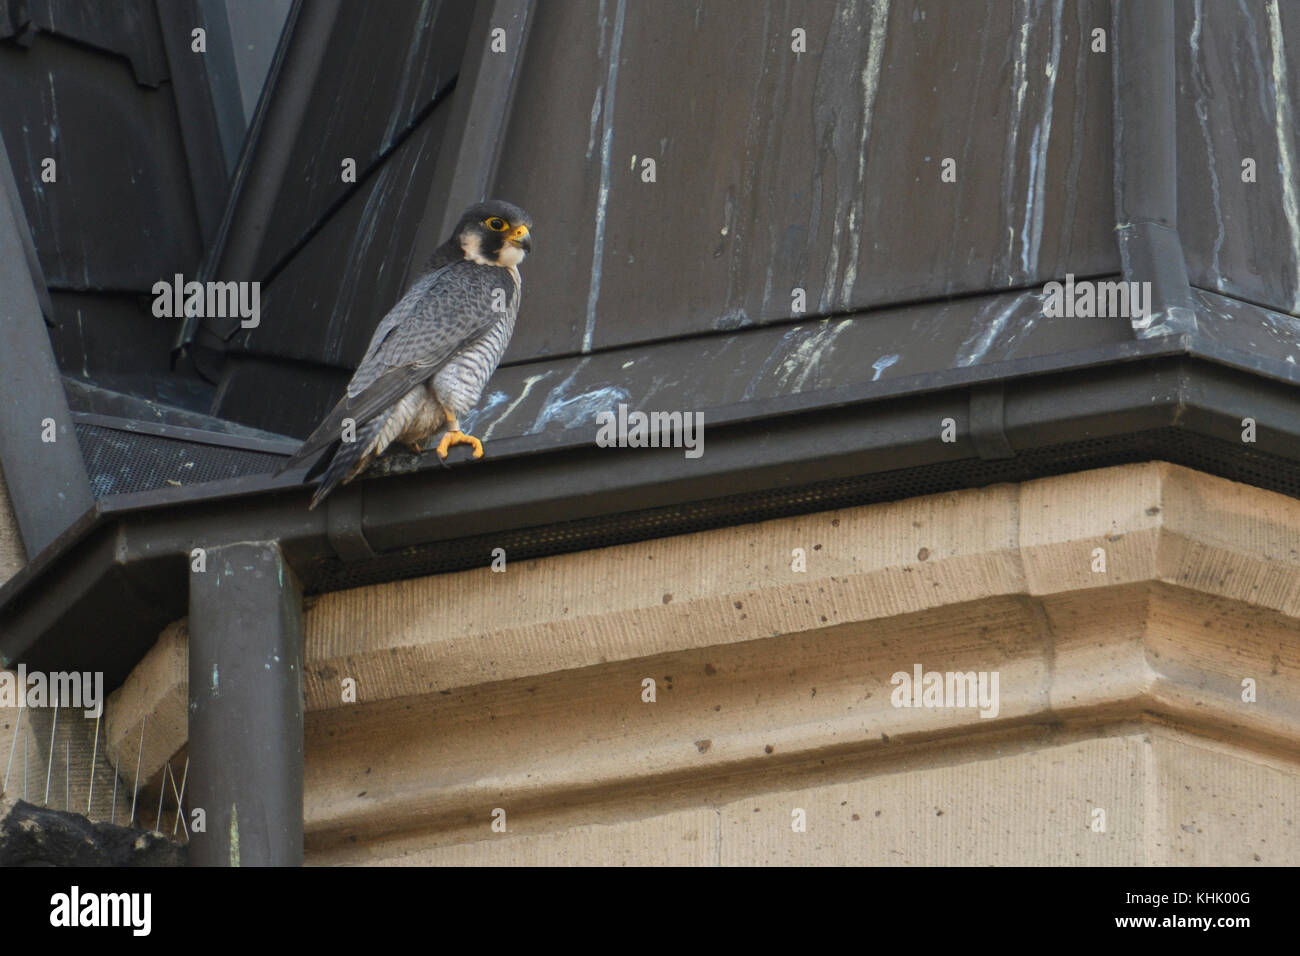 Faucon pèlerin / wanderfalke ( Falco peregrinus ), mâle adulte, tercel, perché sur un toit de l'église, situation typique, de la faune, de l'Europe. Banque D'Images